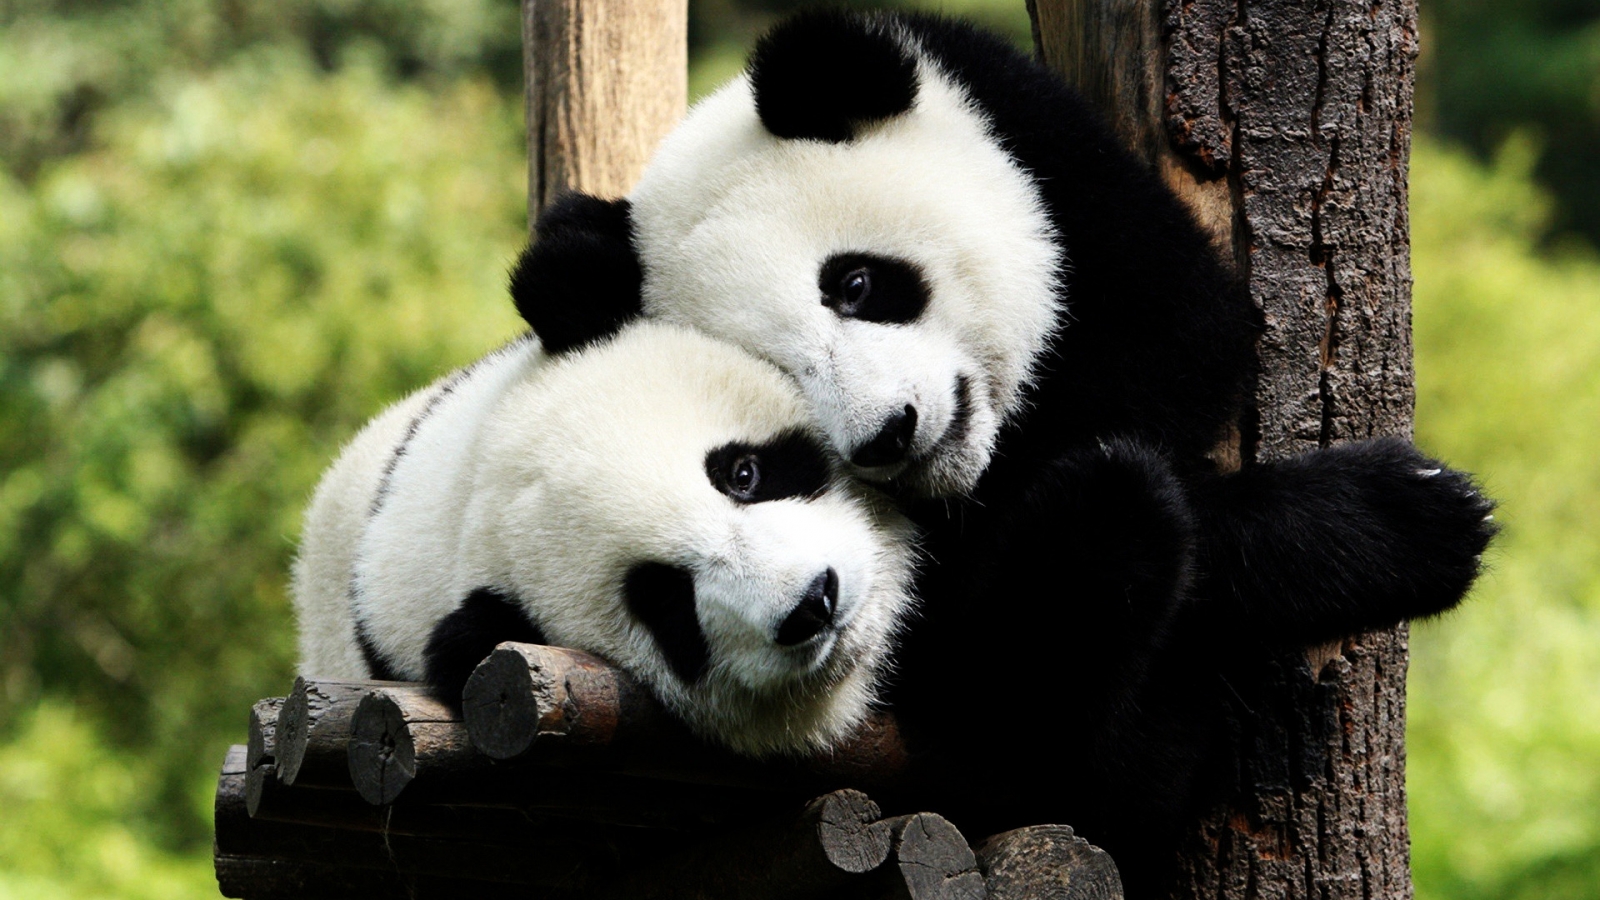 Panda Bears in Love for 1600 x 900 HDTV resolution